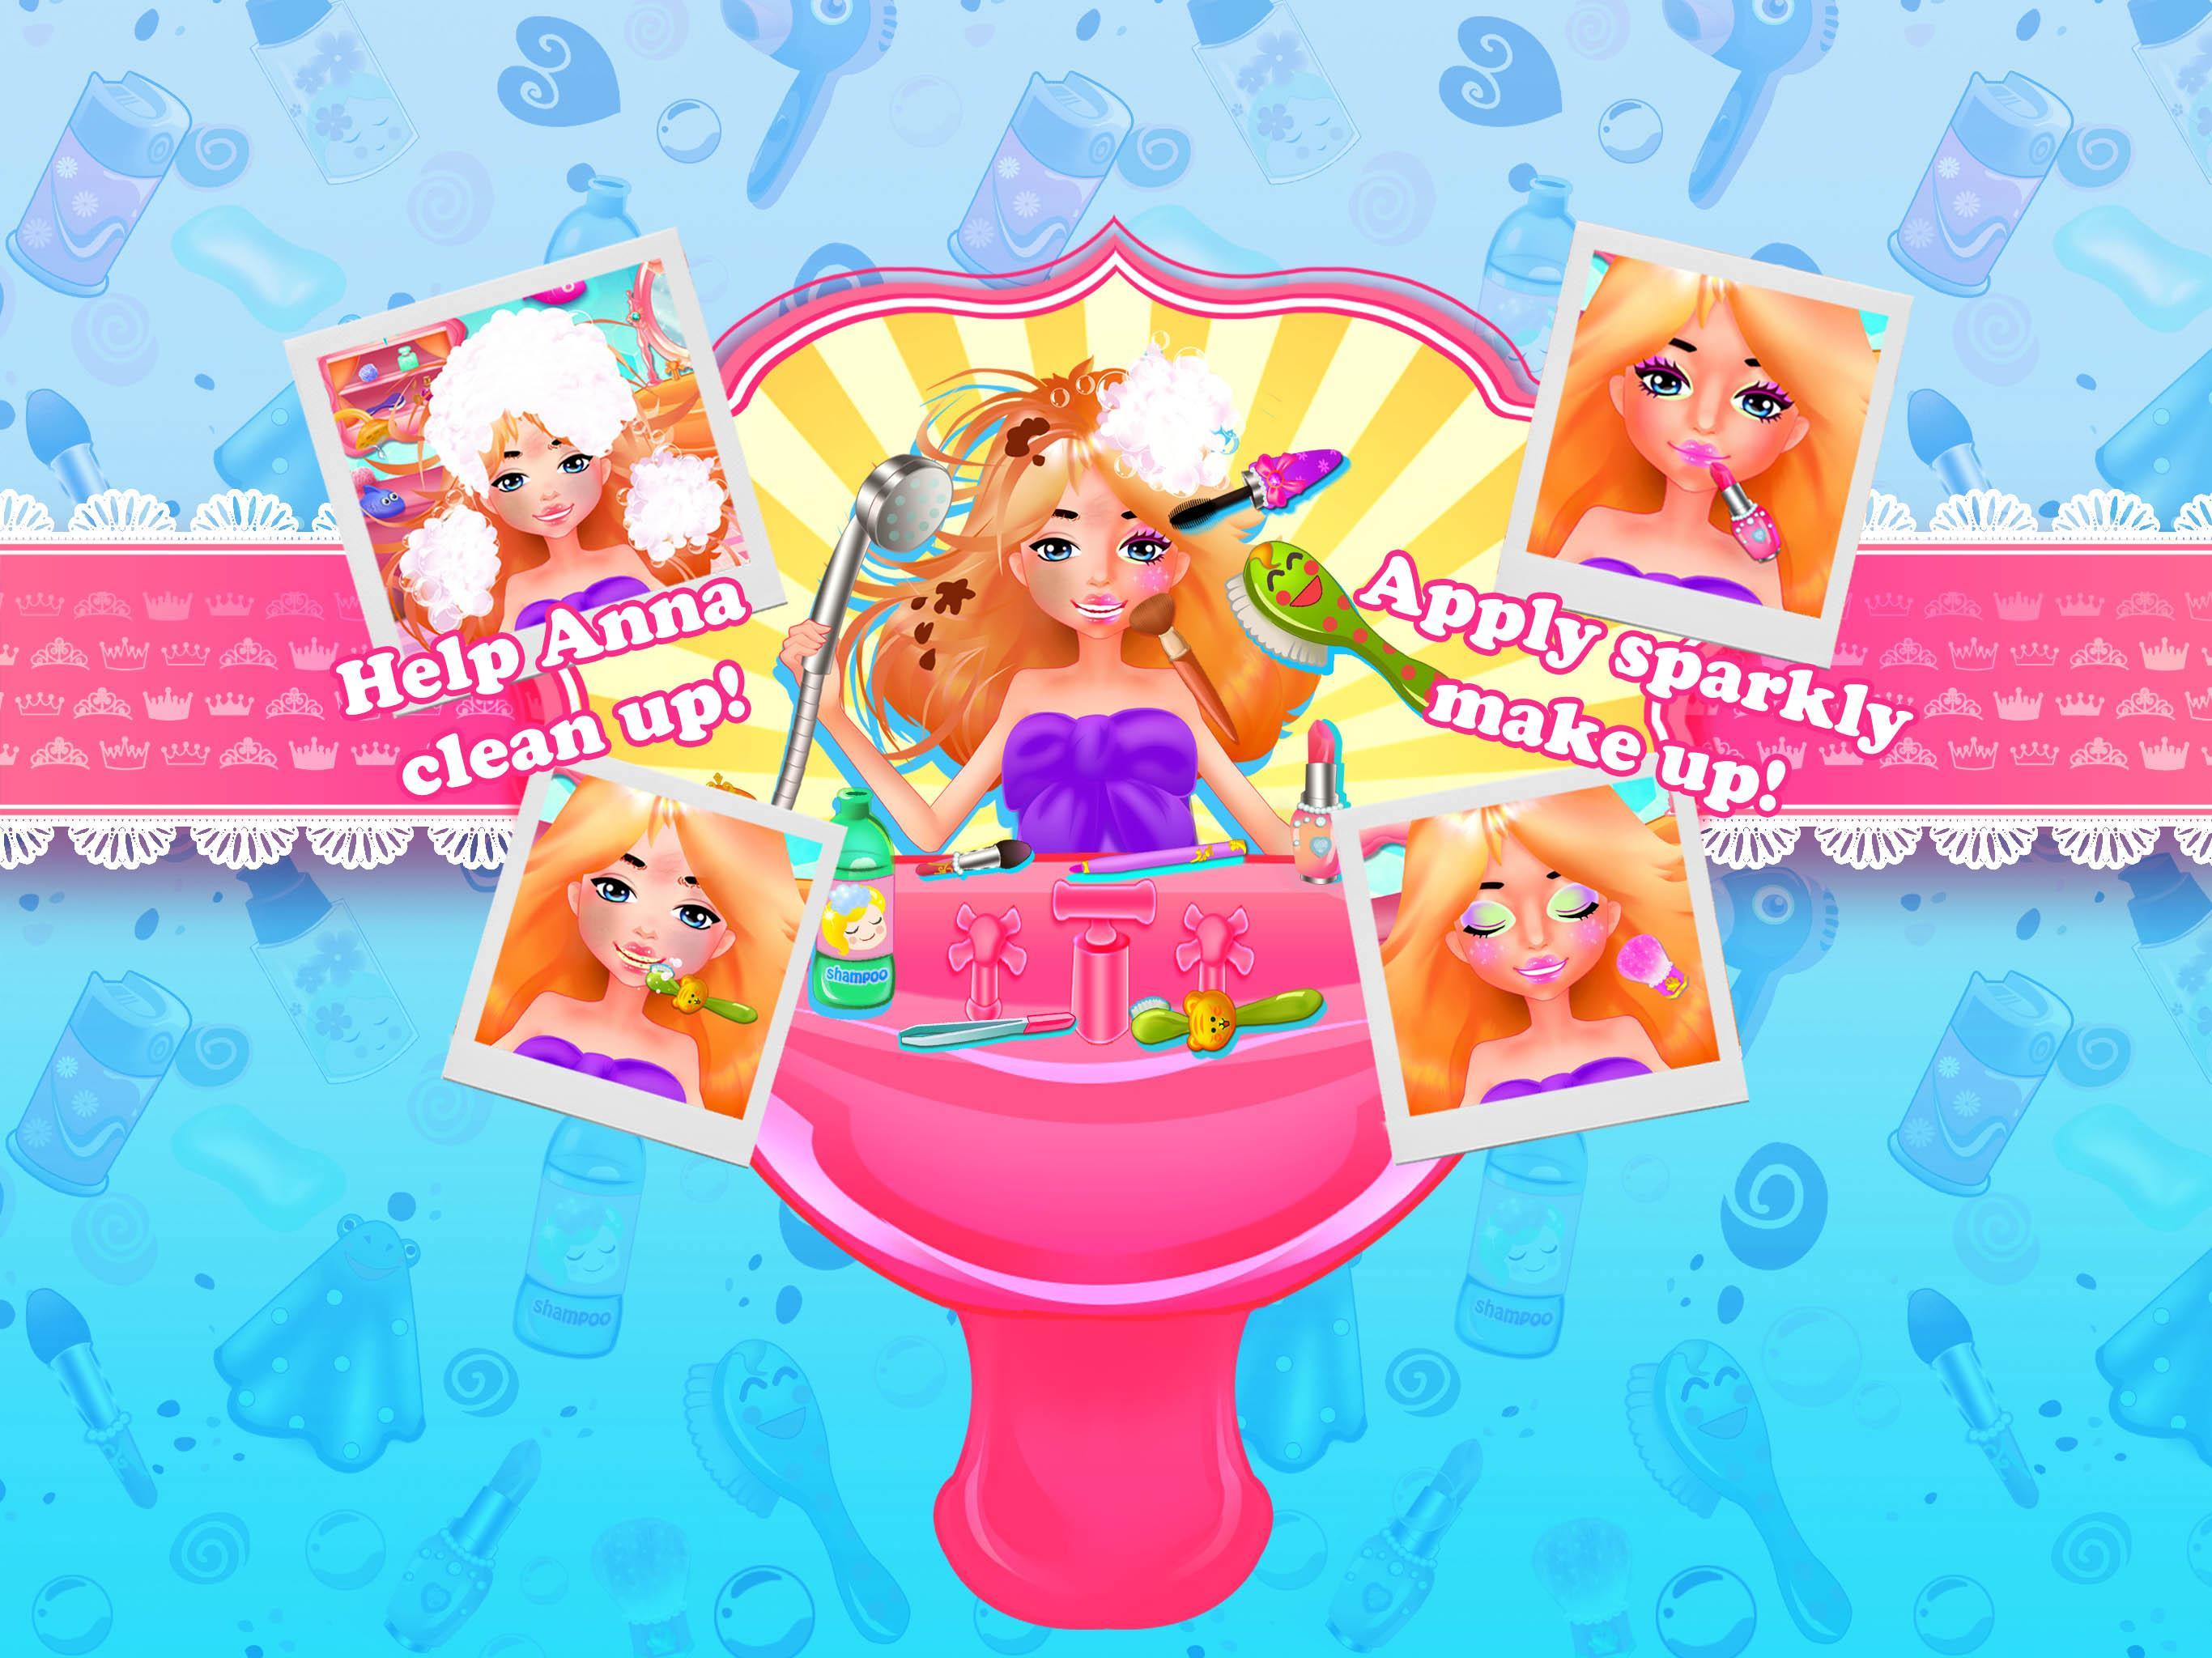 Princess Anna Tea Party screenshot game